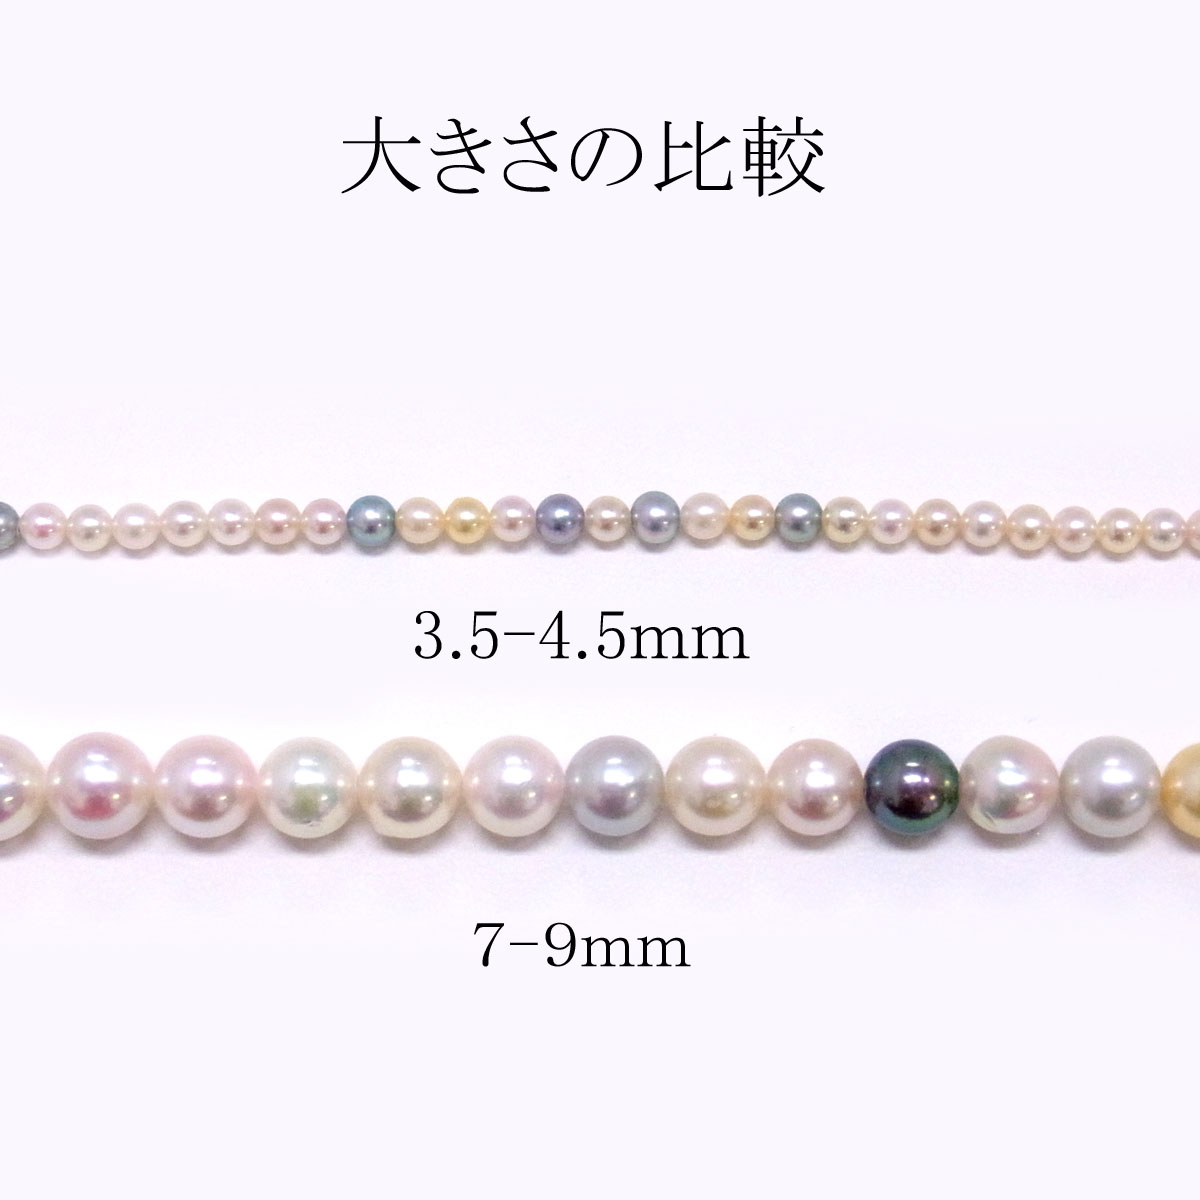 アコヤ真珠 ベビーパールネックレス マルチカラー 3.5-4.5mm 限定品